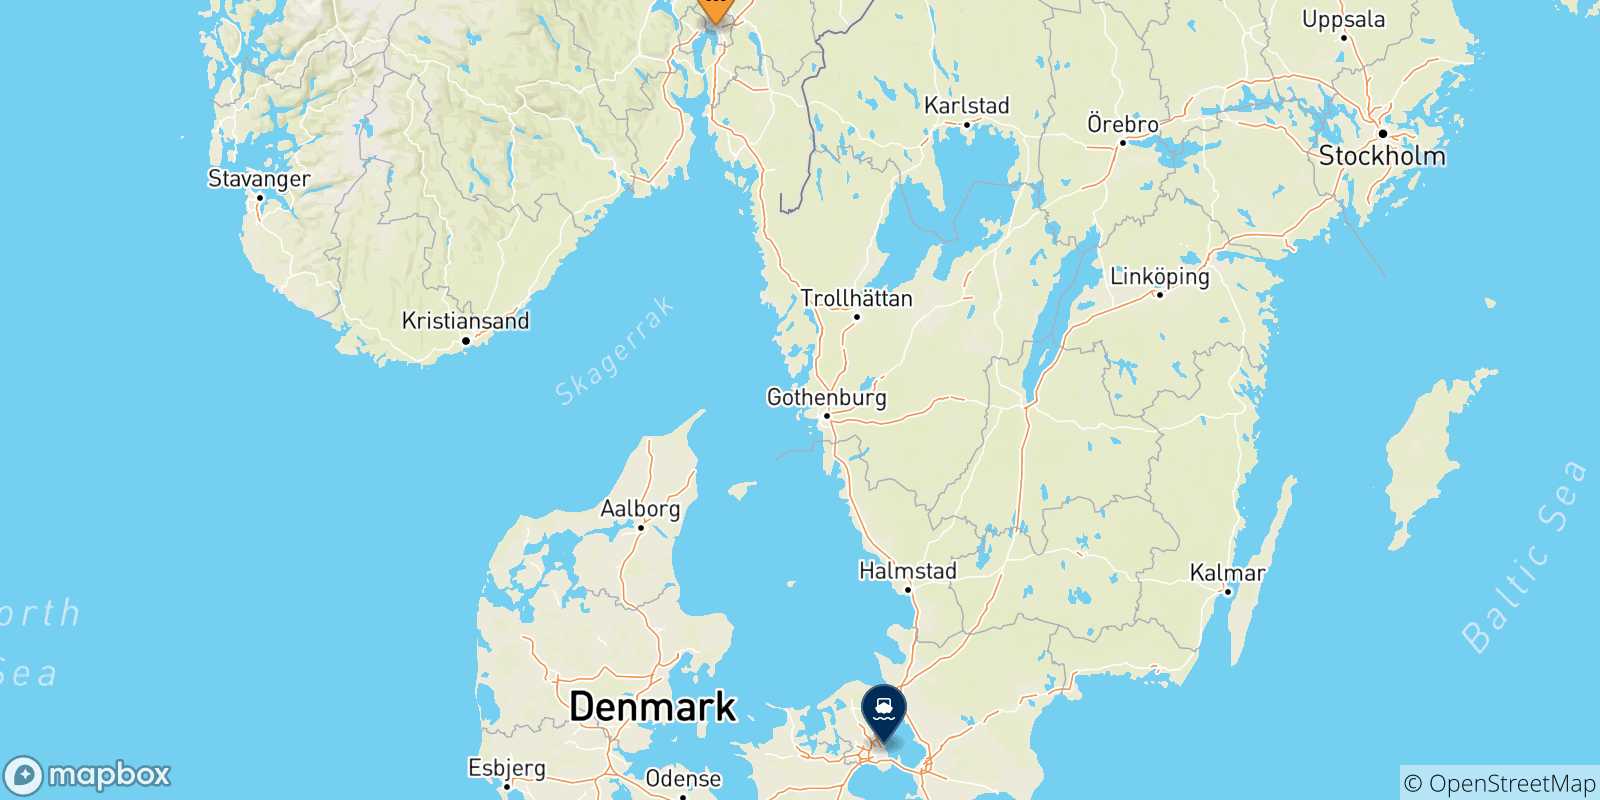 Mappa delle possibili rotte tra la Norvegia e la Danimarca